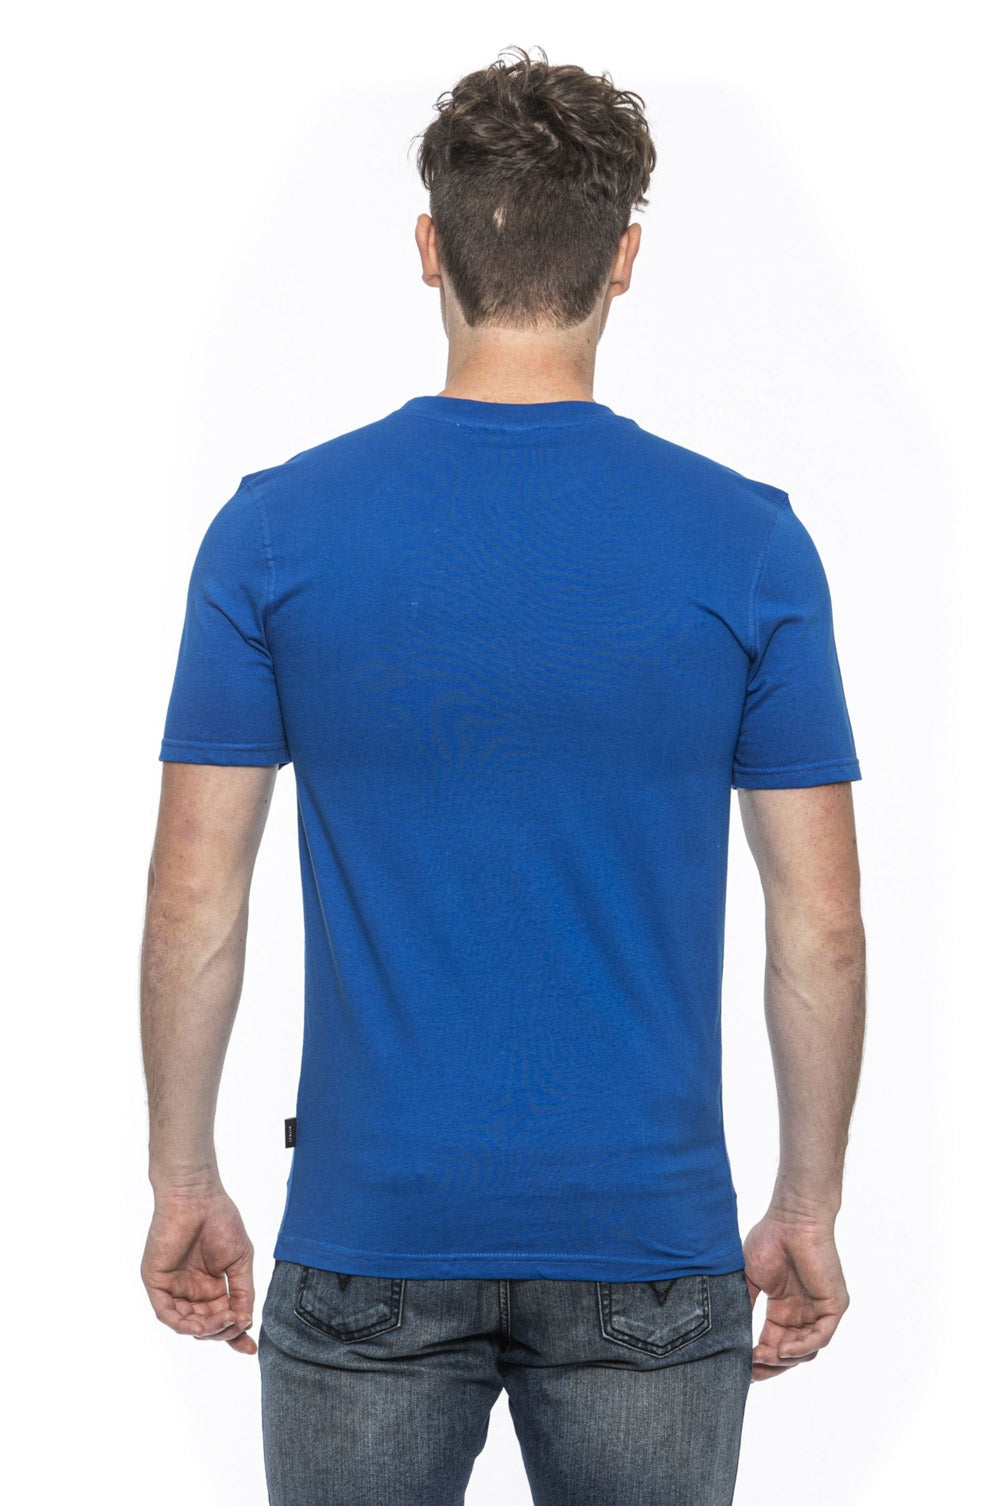 19V69 Italia Mens T-Shirt Blue TROY ROYAL BLUE